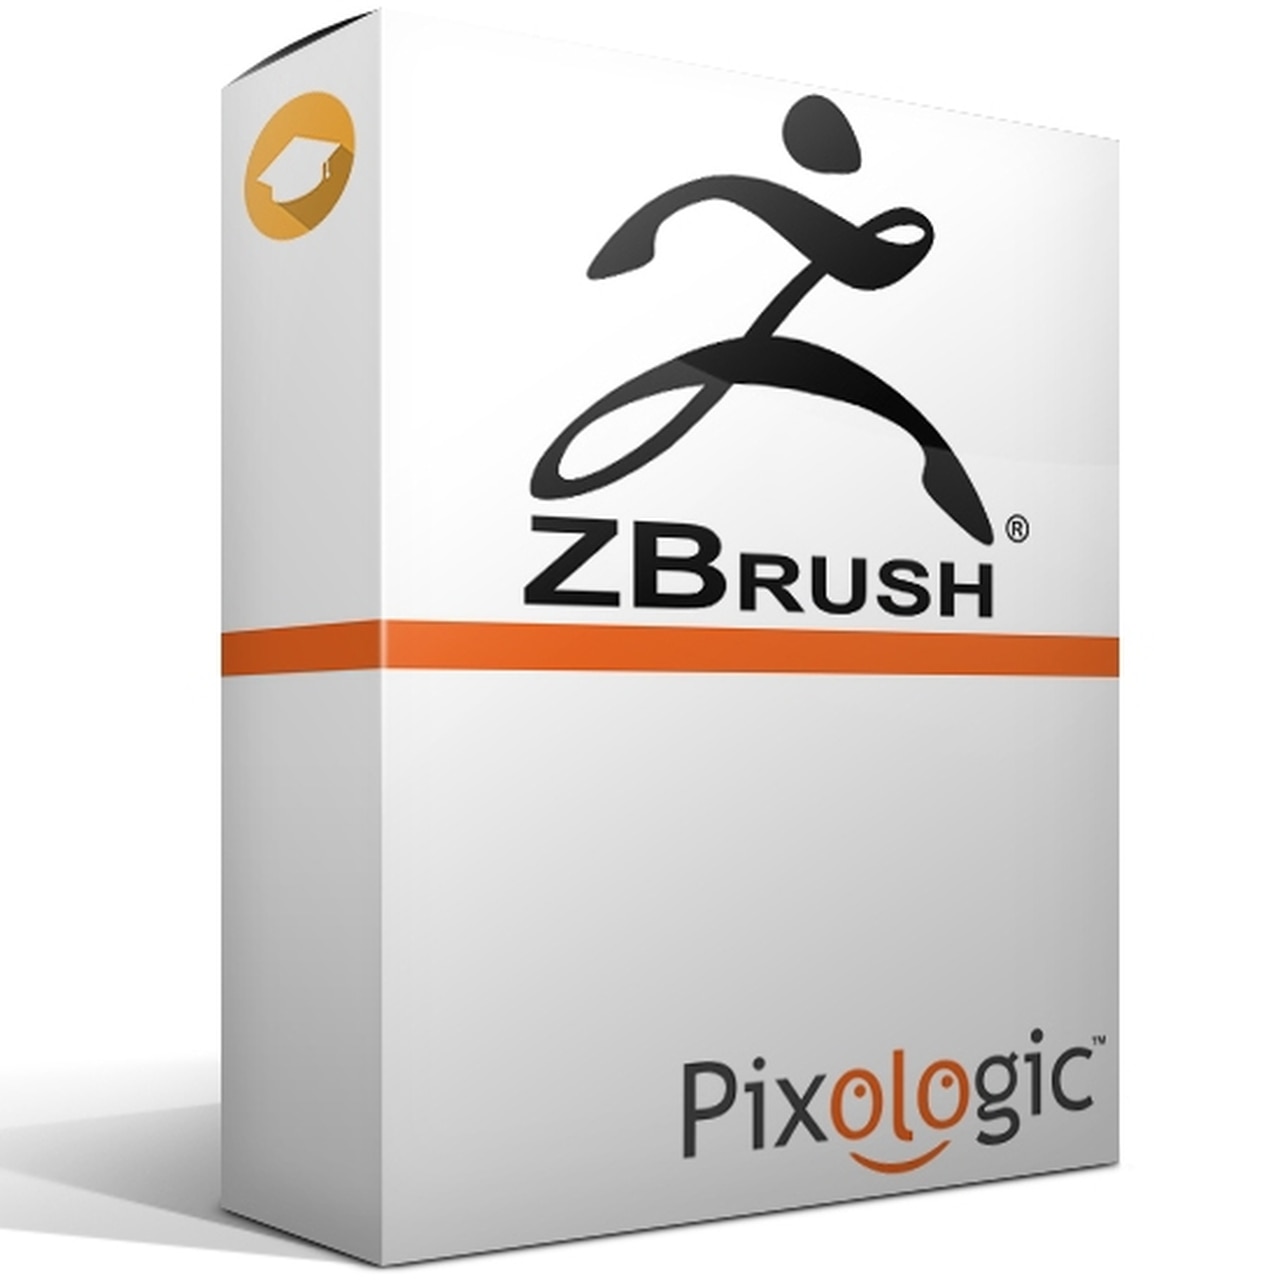 Pixologic ZBrush Latest Version